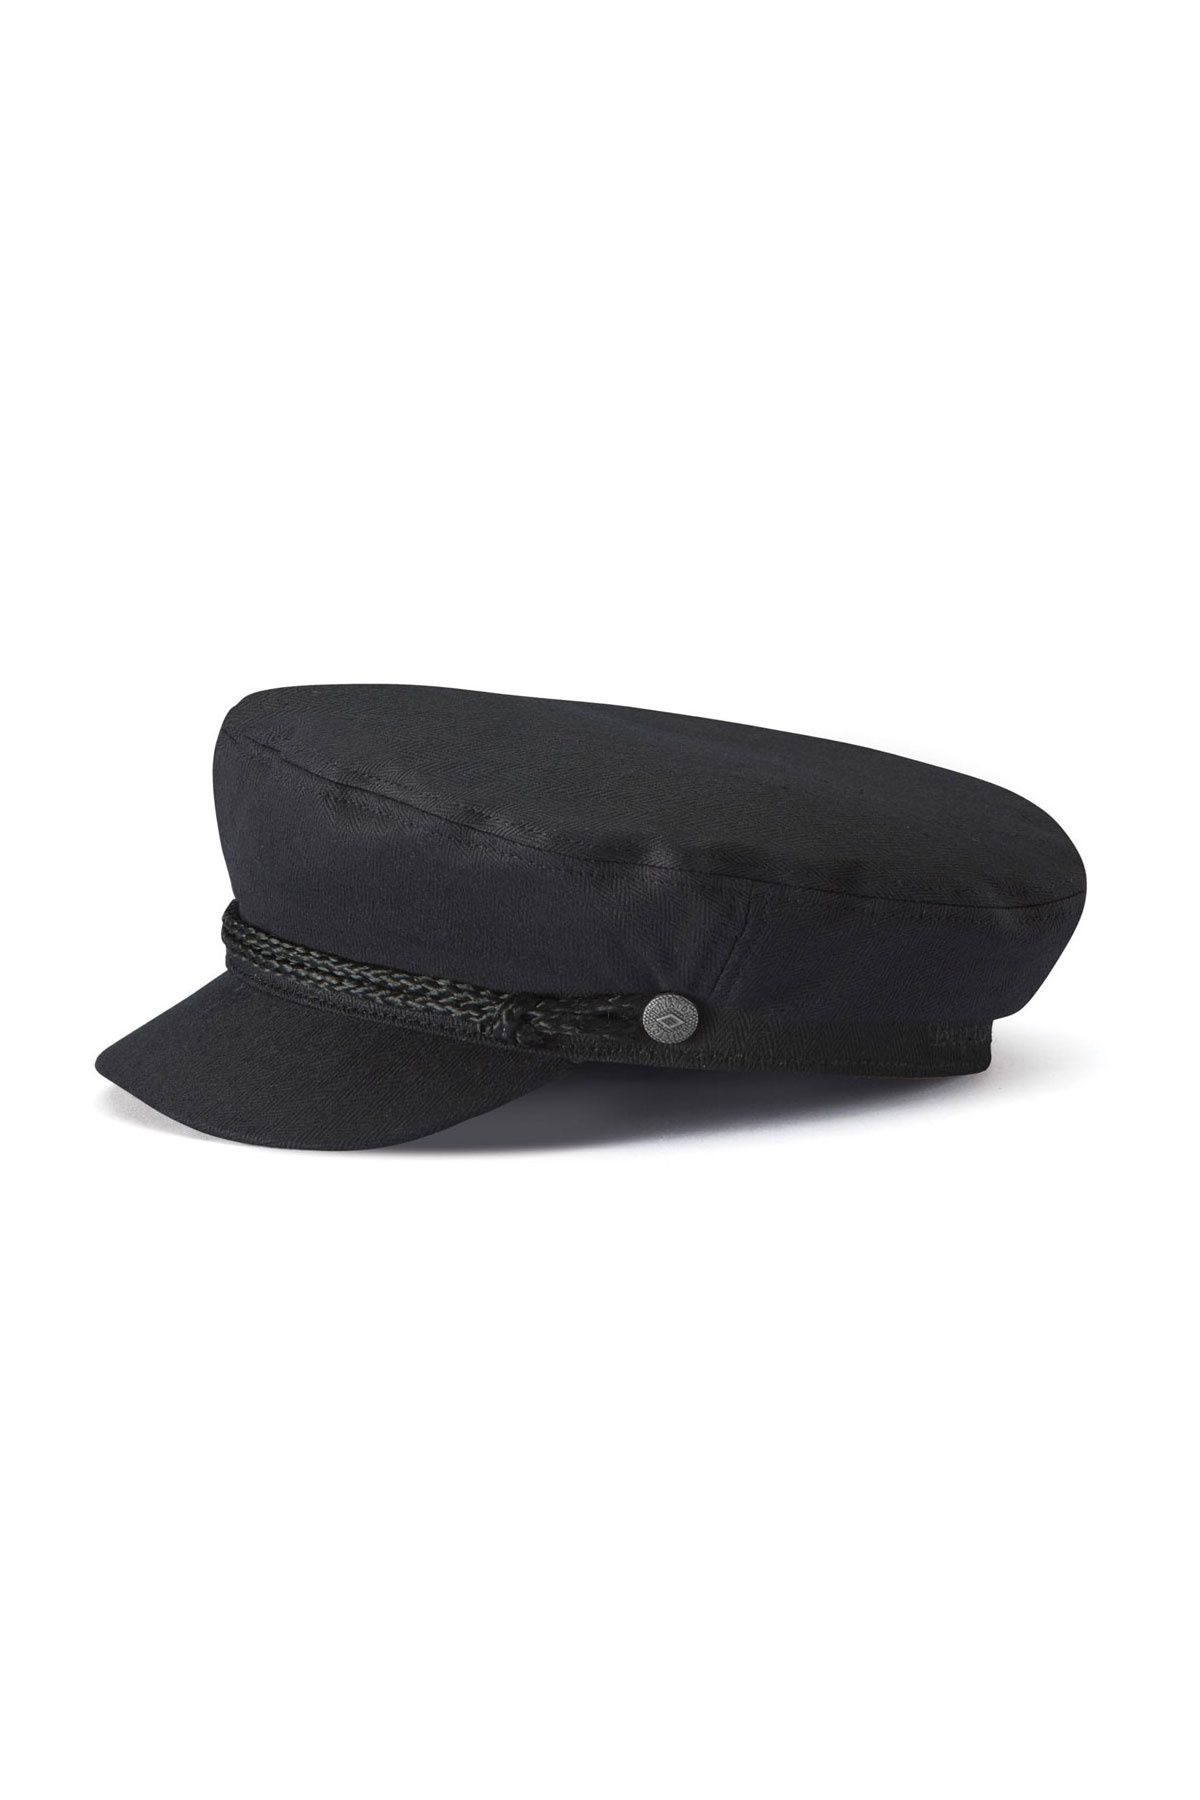 Brixton Fiddler Cap  Roxann's Hats of Fort Langley - Roxanns Hats of Fort  Langley